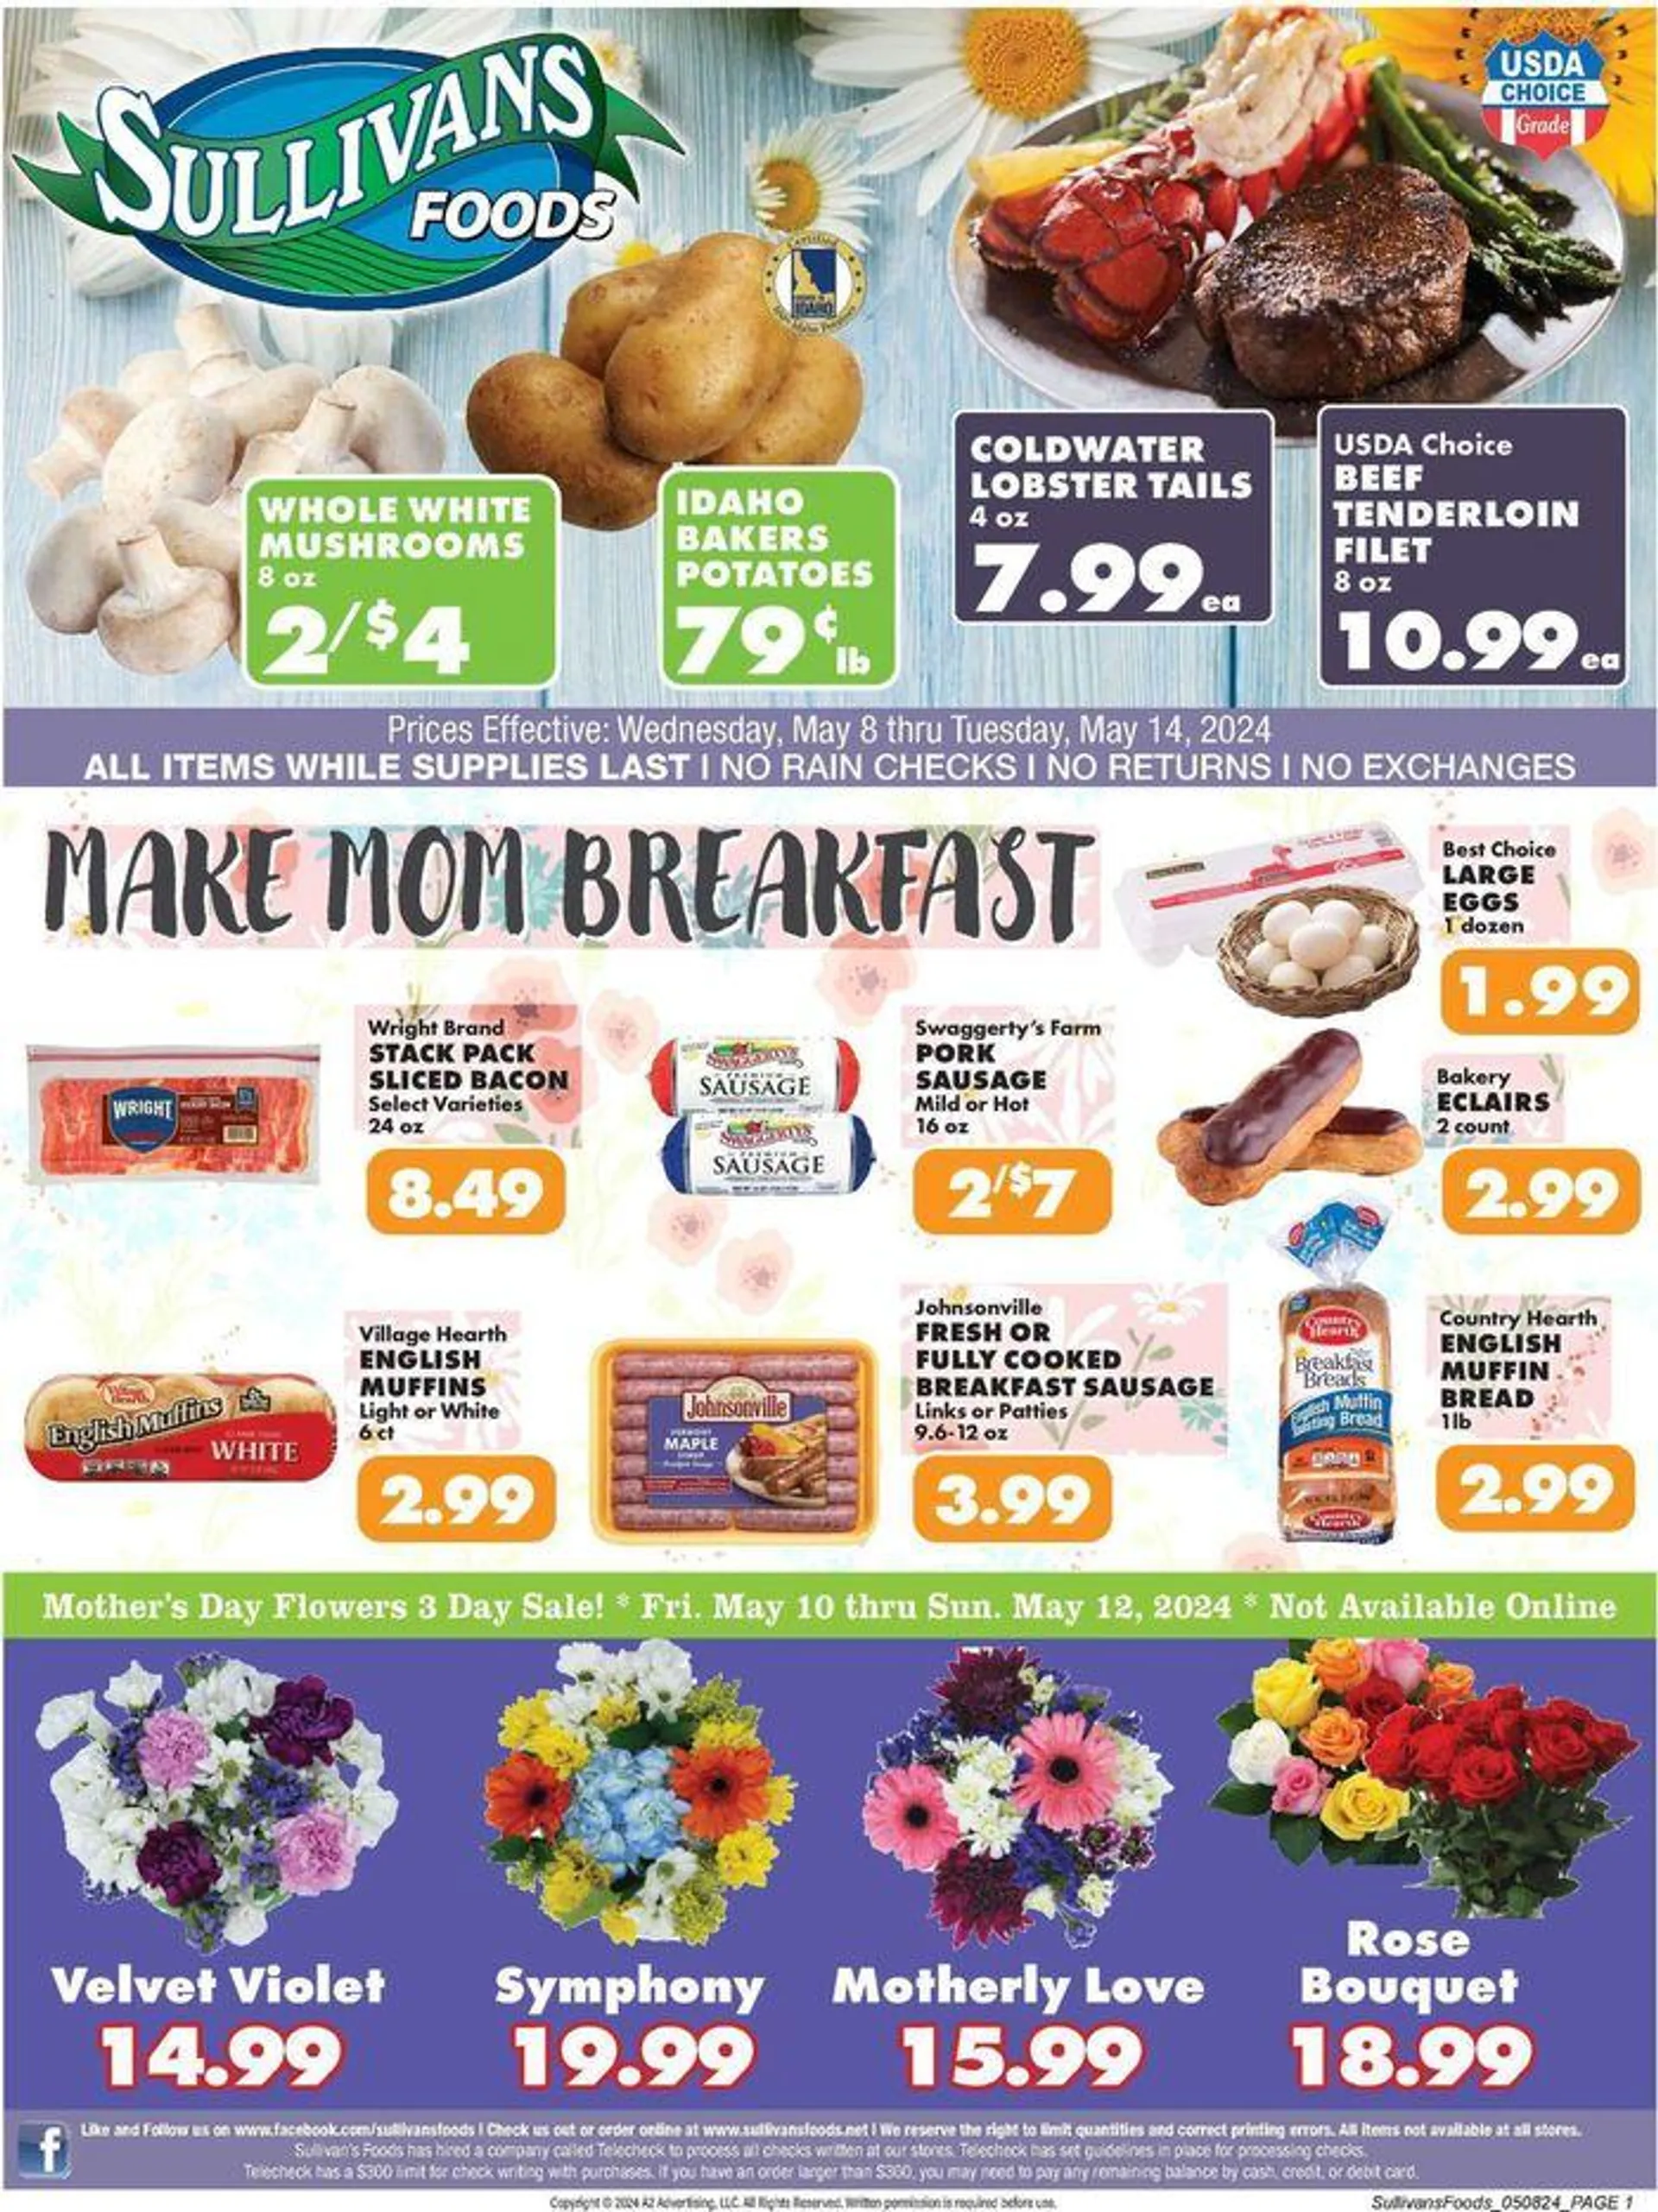 Make Mum Breakfast - 1